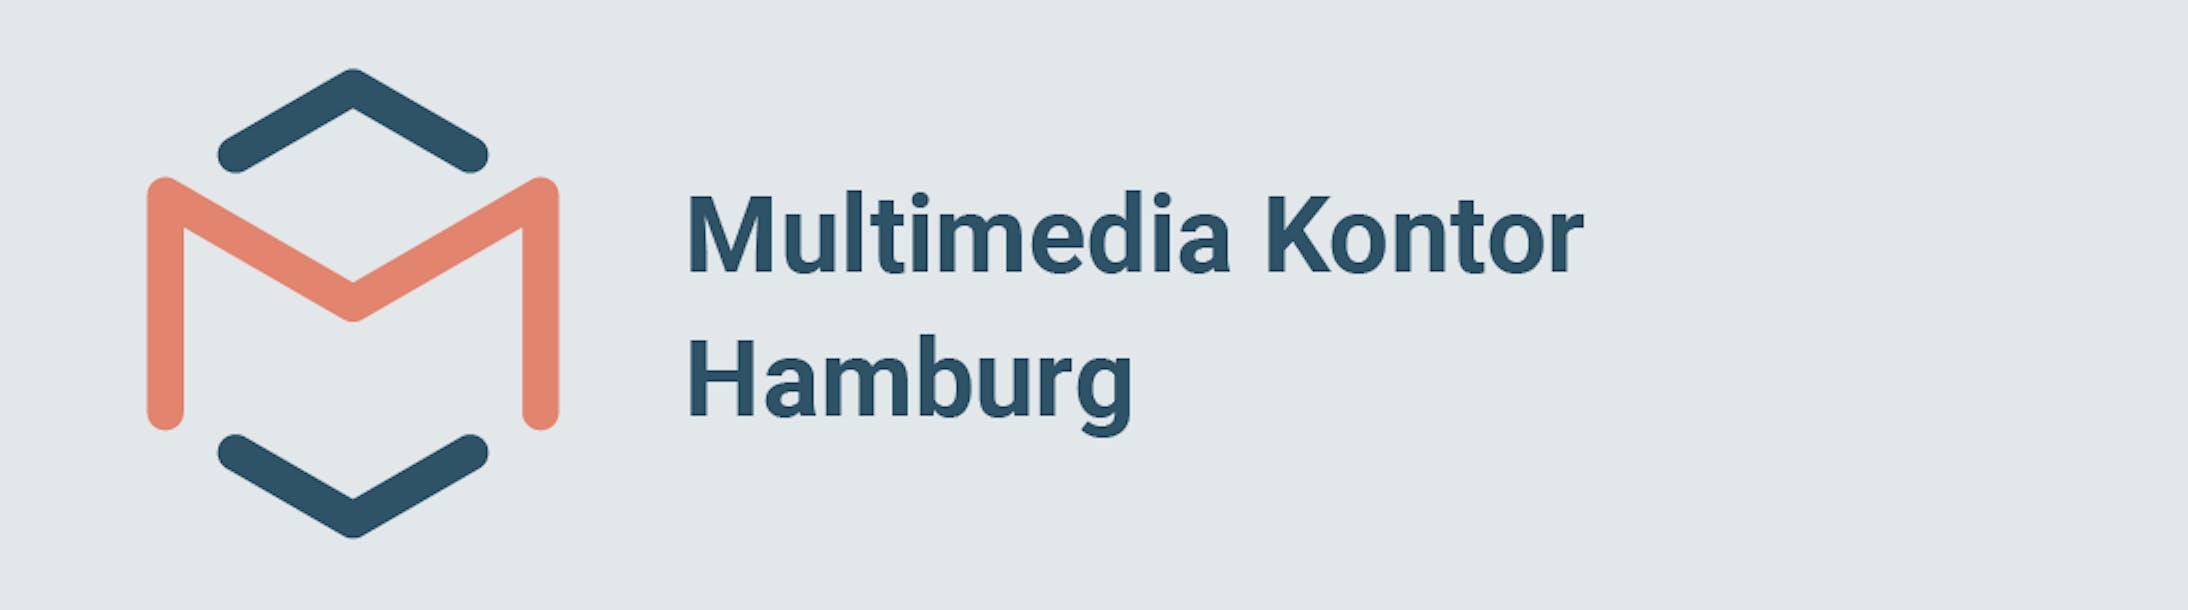 Multimedia Kontor Hamburg gGmbH